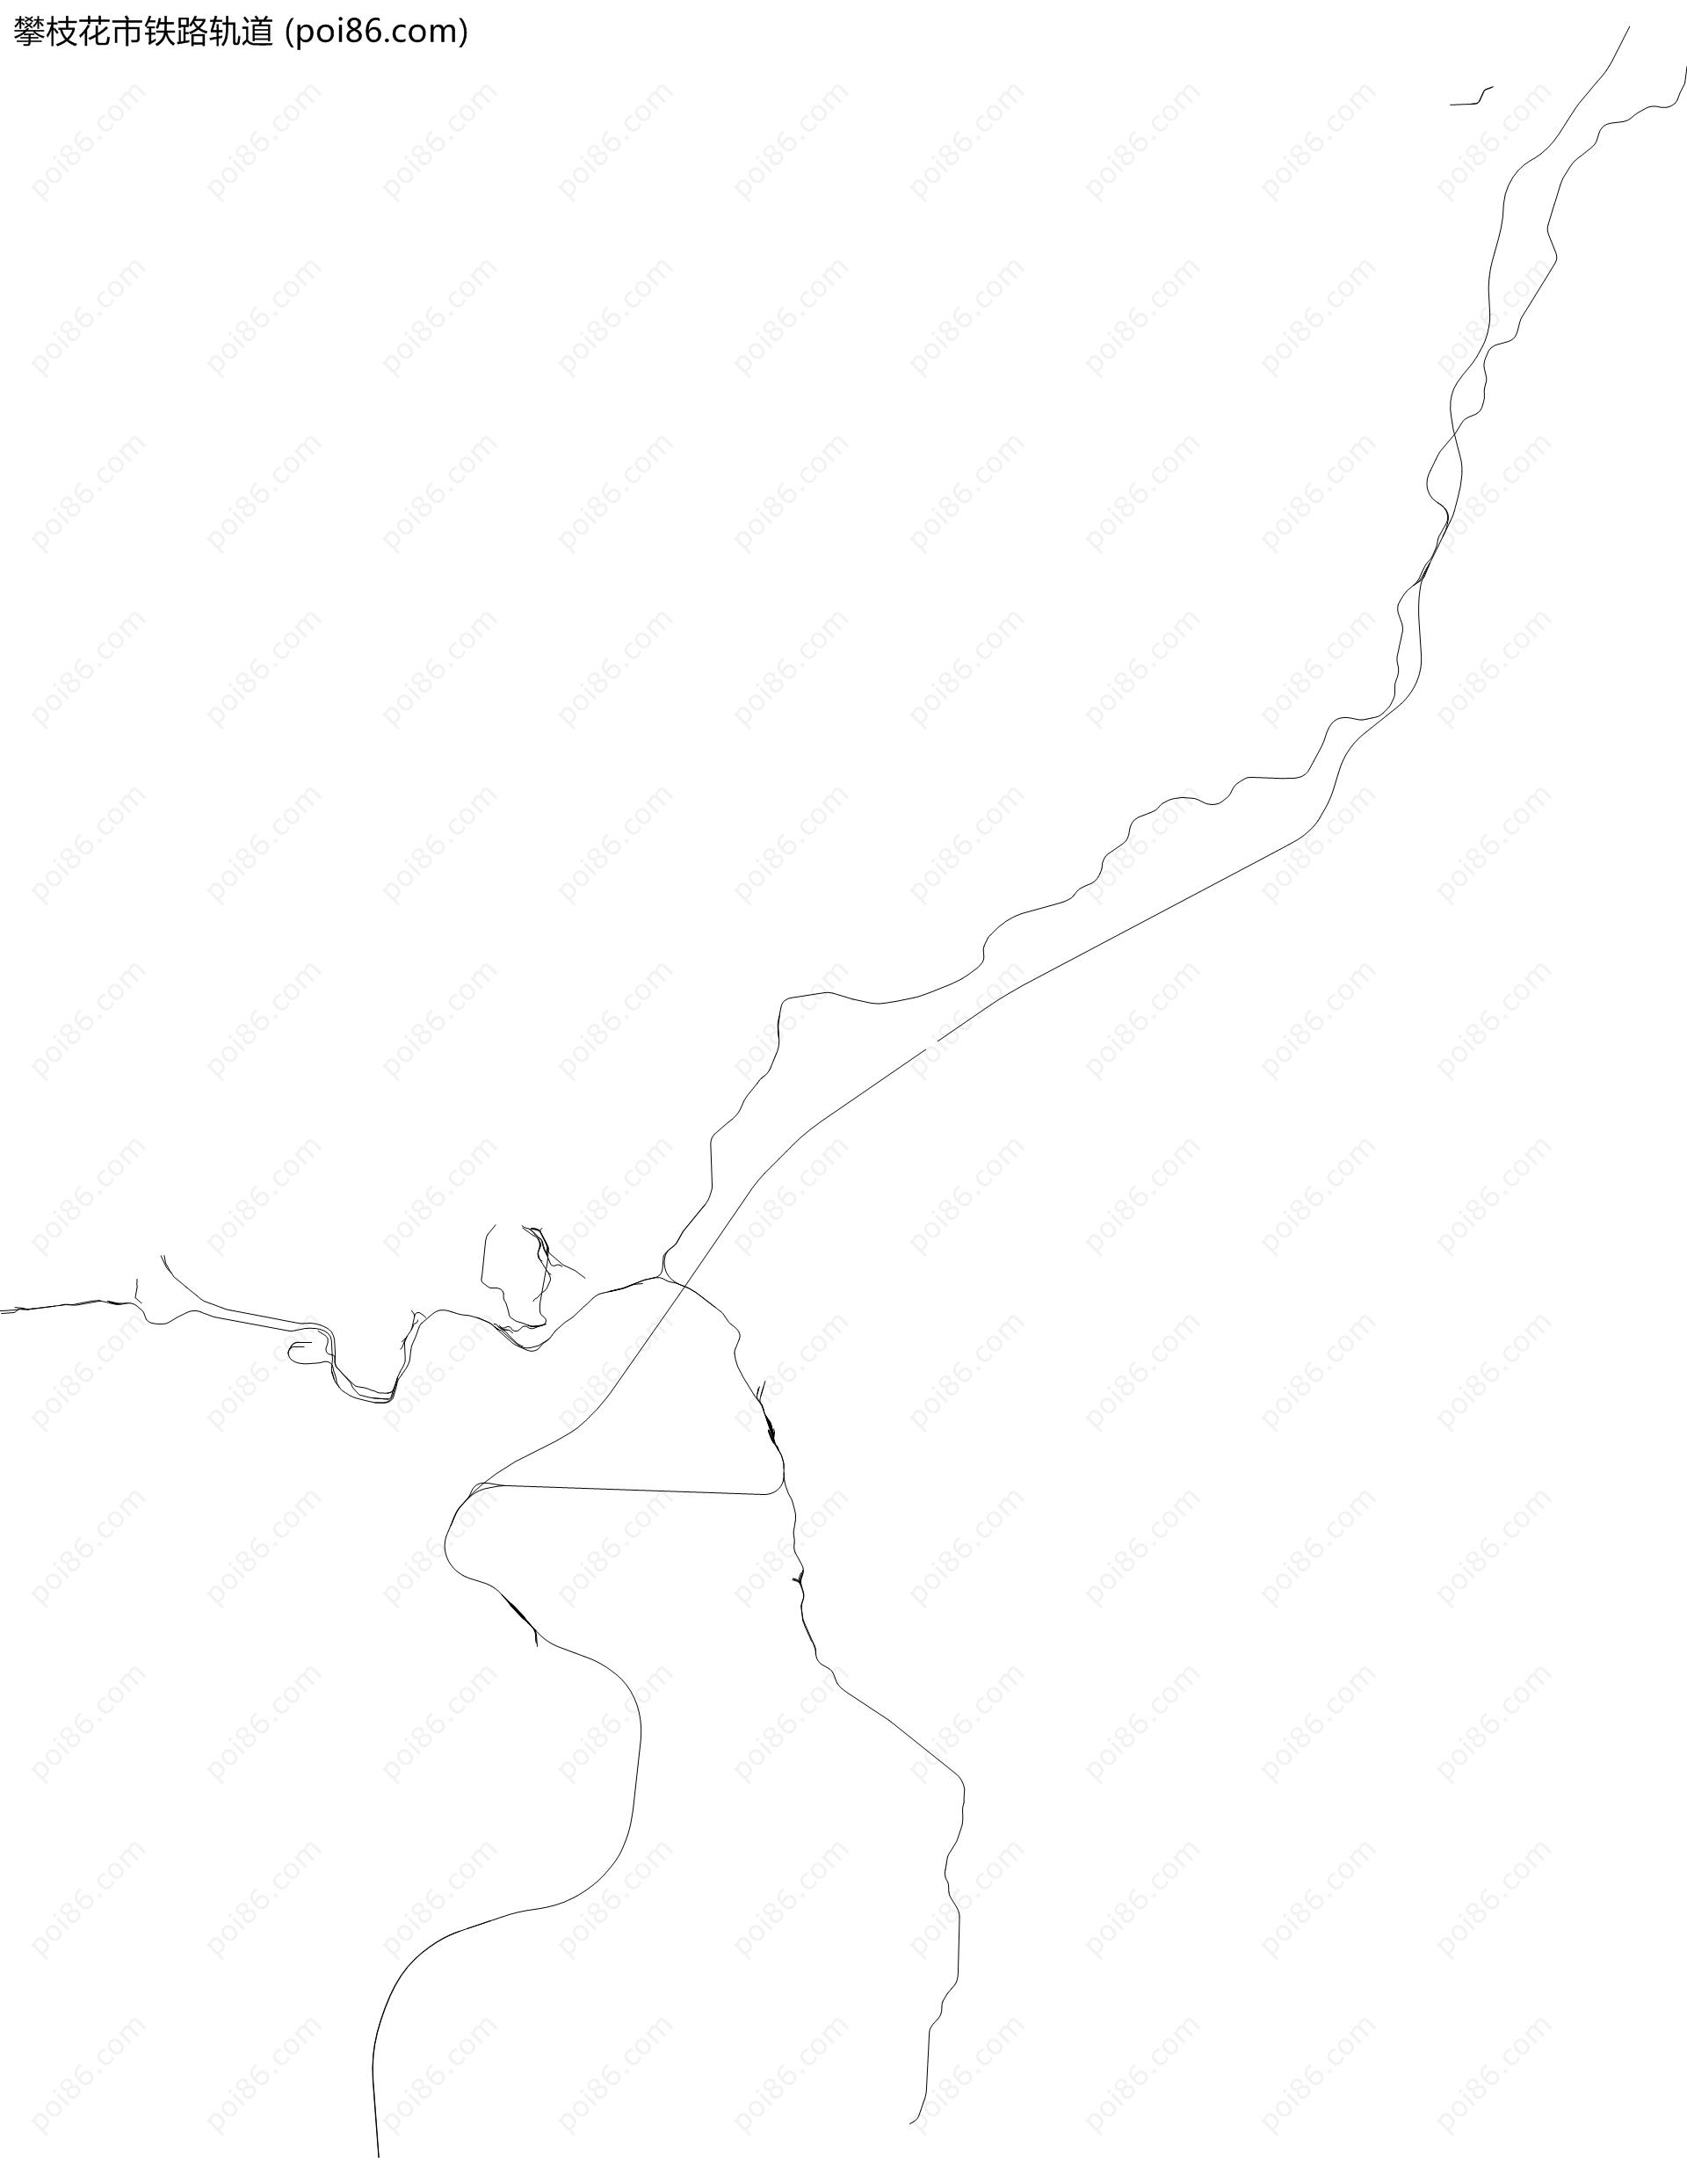 攀枝花市铁路轨道地图